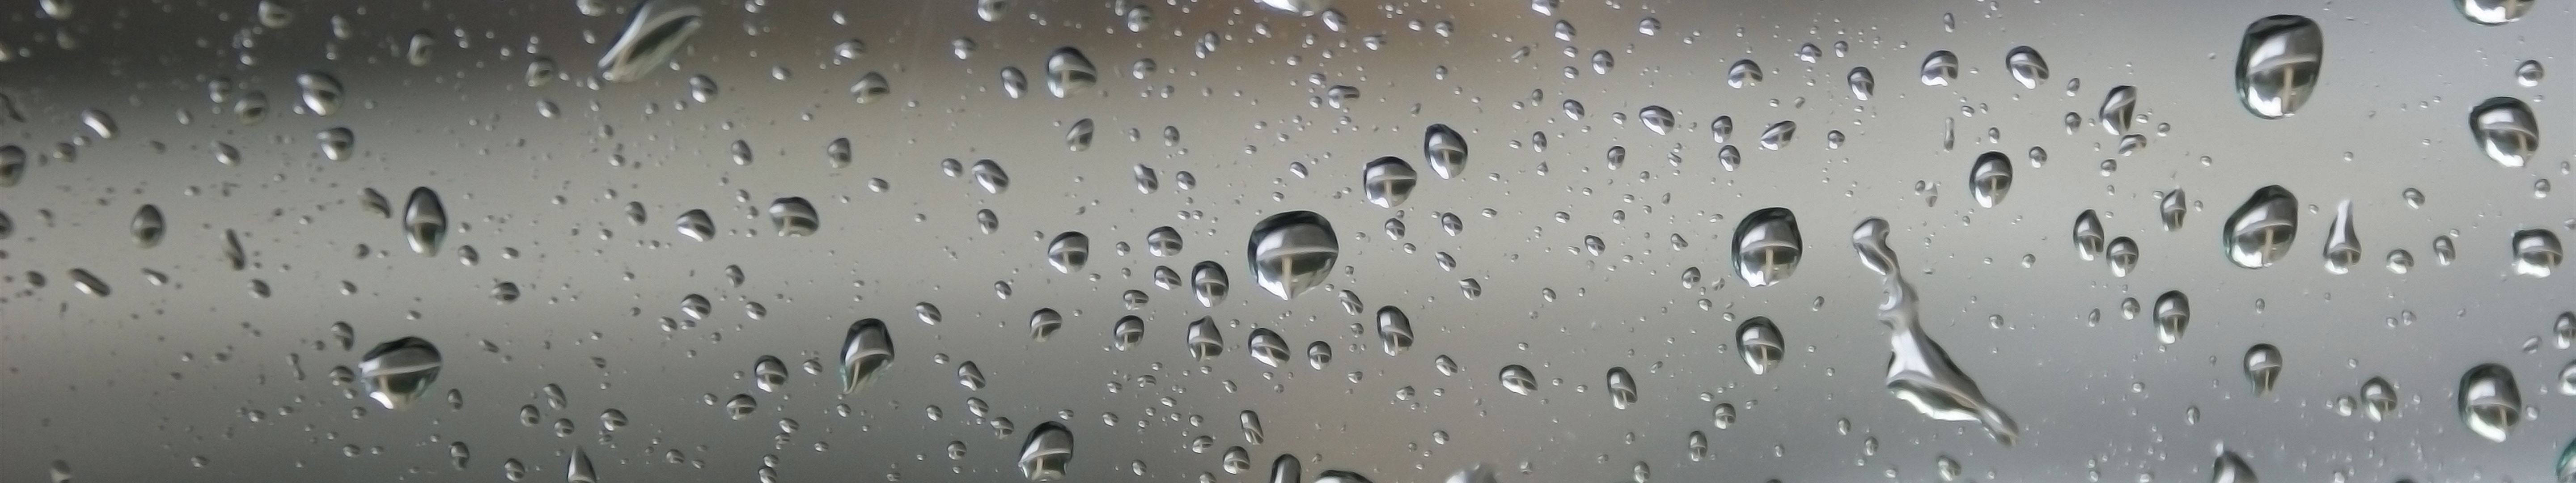 3 Monitor Dew Drops Wallpaper